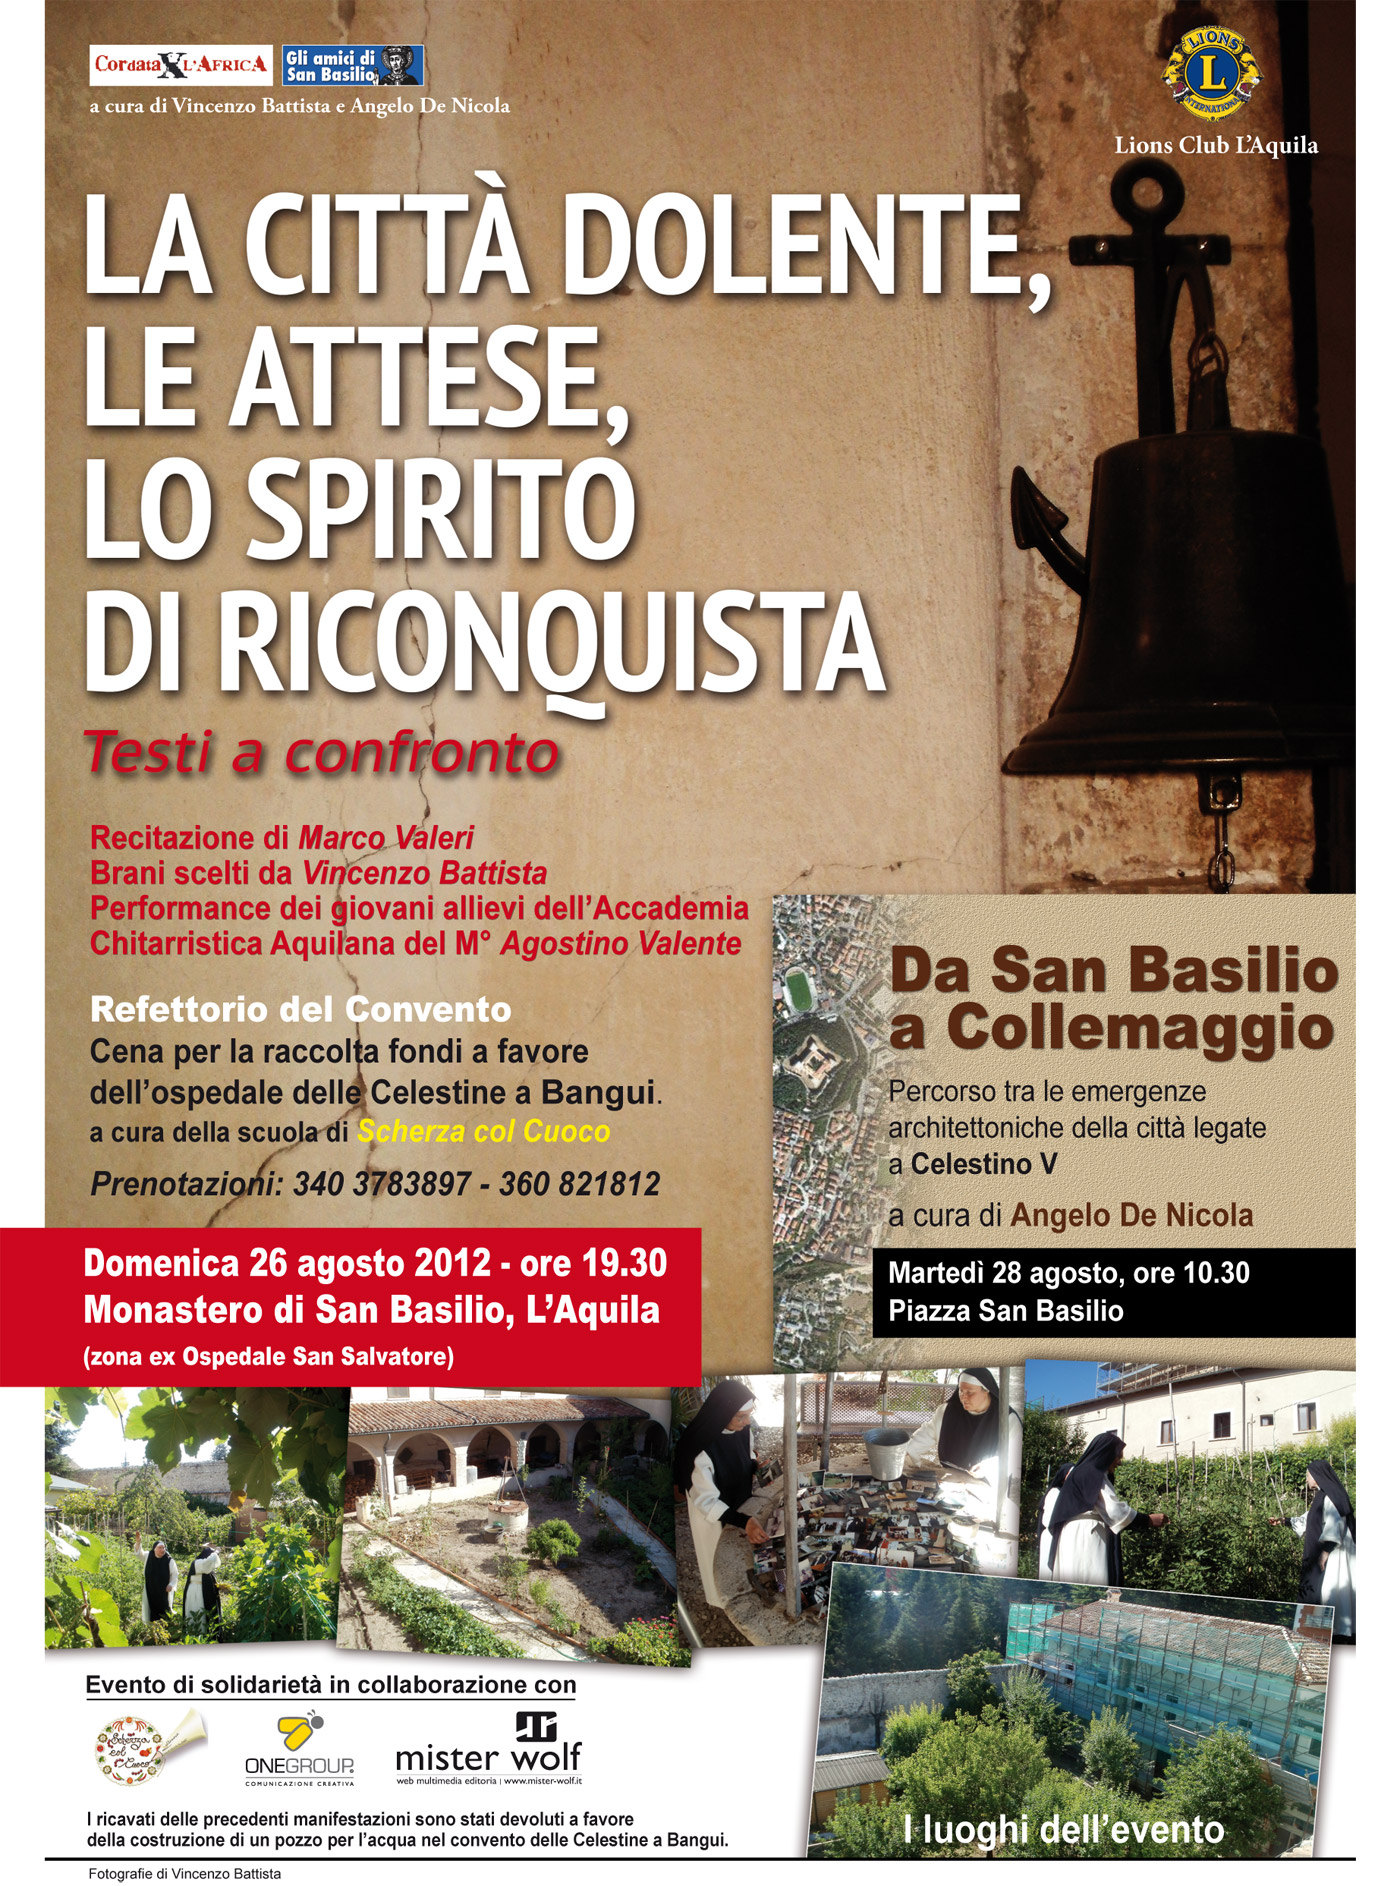 Evento di solidarietà. Cordata per l'Africa: domenica 26 agosto al Monastero di clausura di San Basilio dell'Aquila